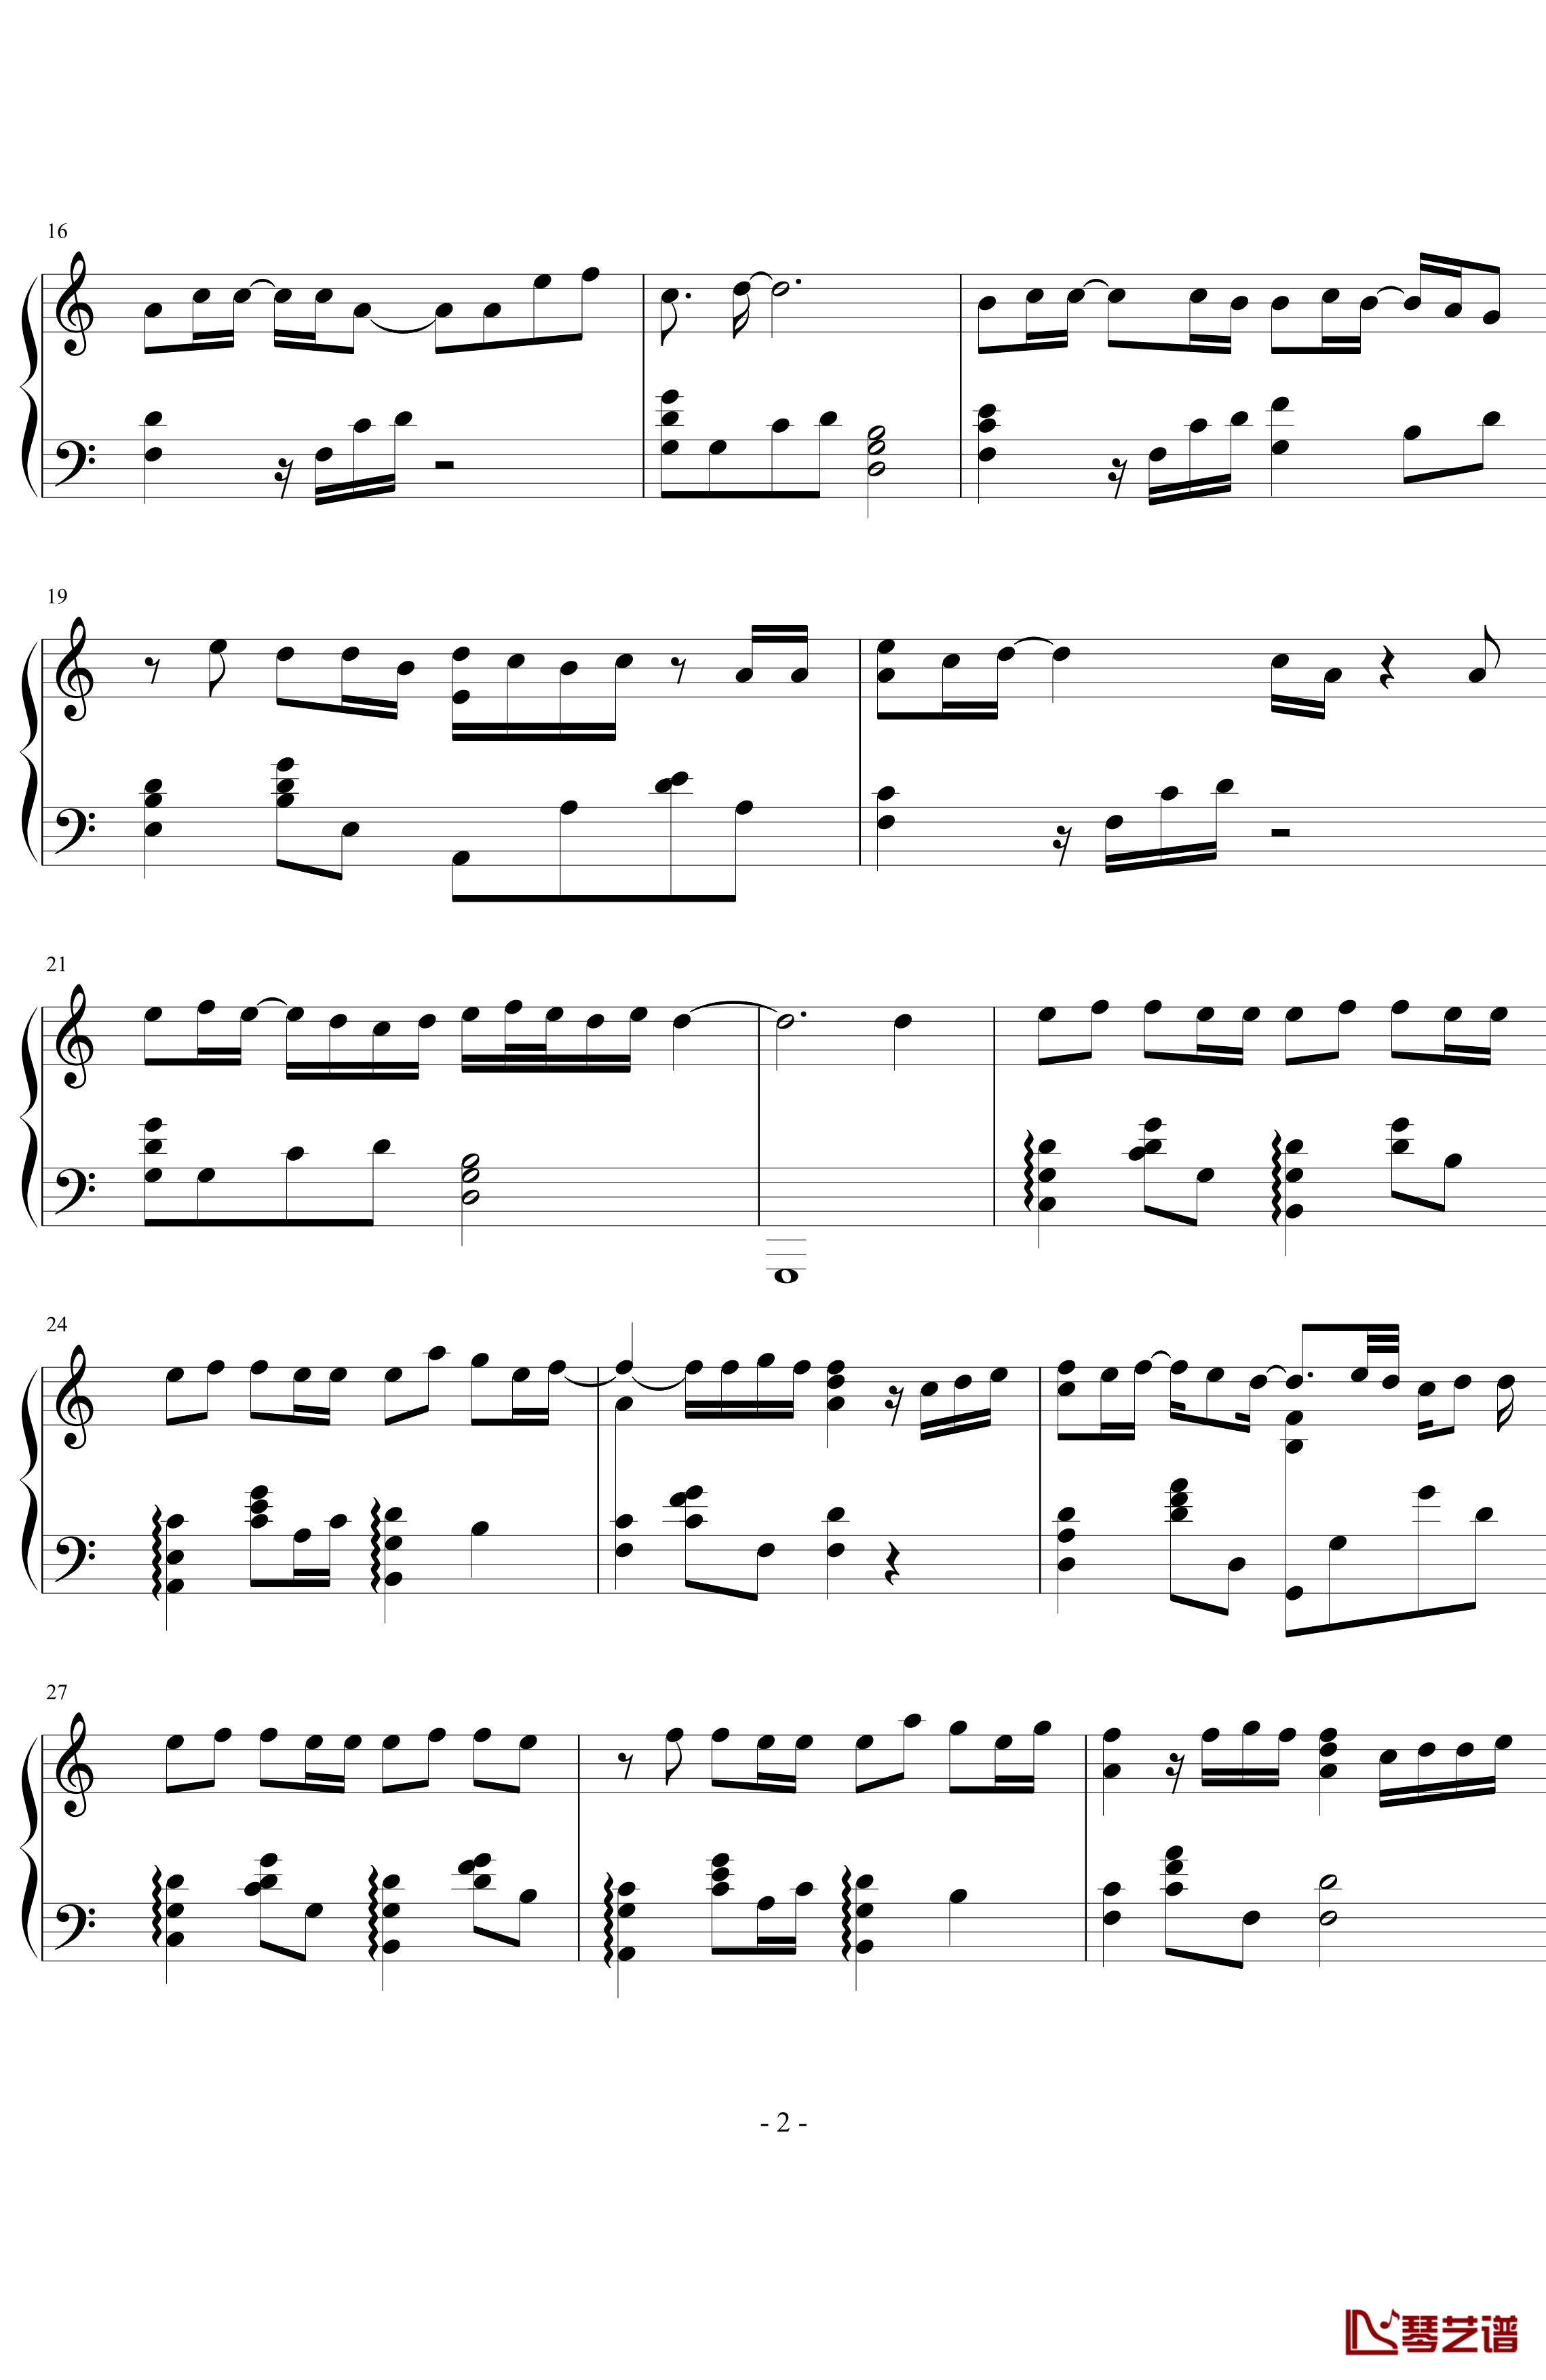 绝版的温柔钢琴谱-第一诞生版-丁于2